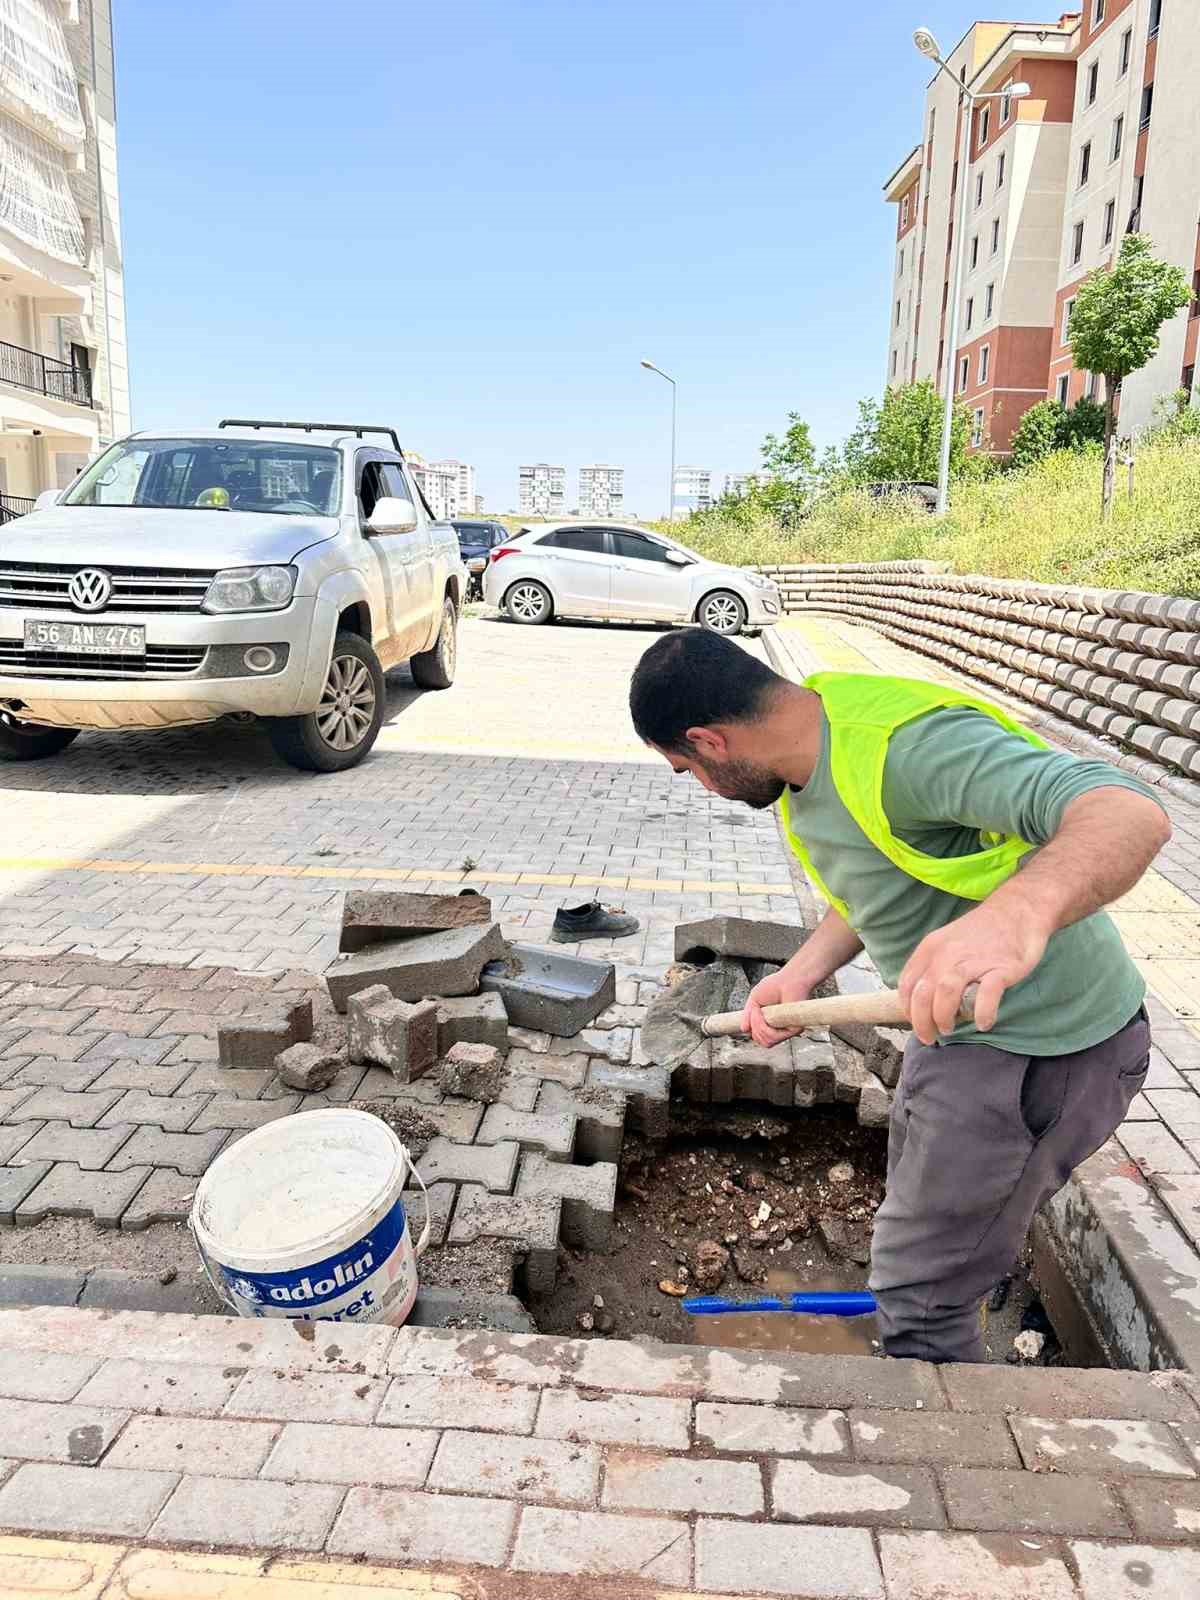 Siirt Belediyesi kaçak su kullanımının önüne geçmek için çalışma başlattı
